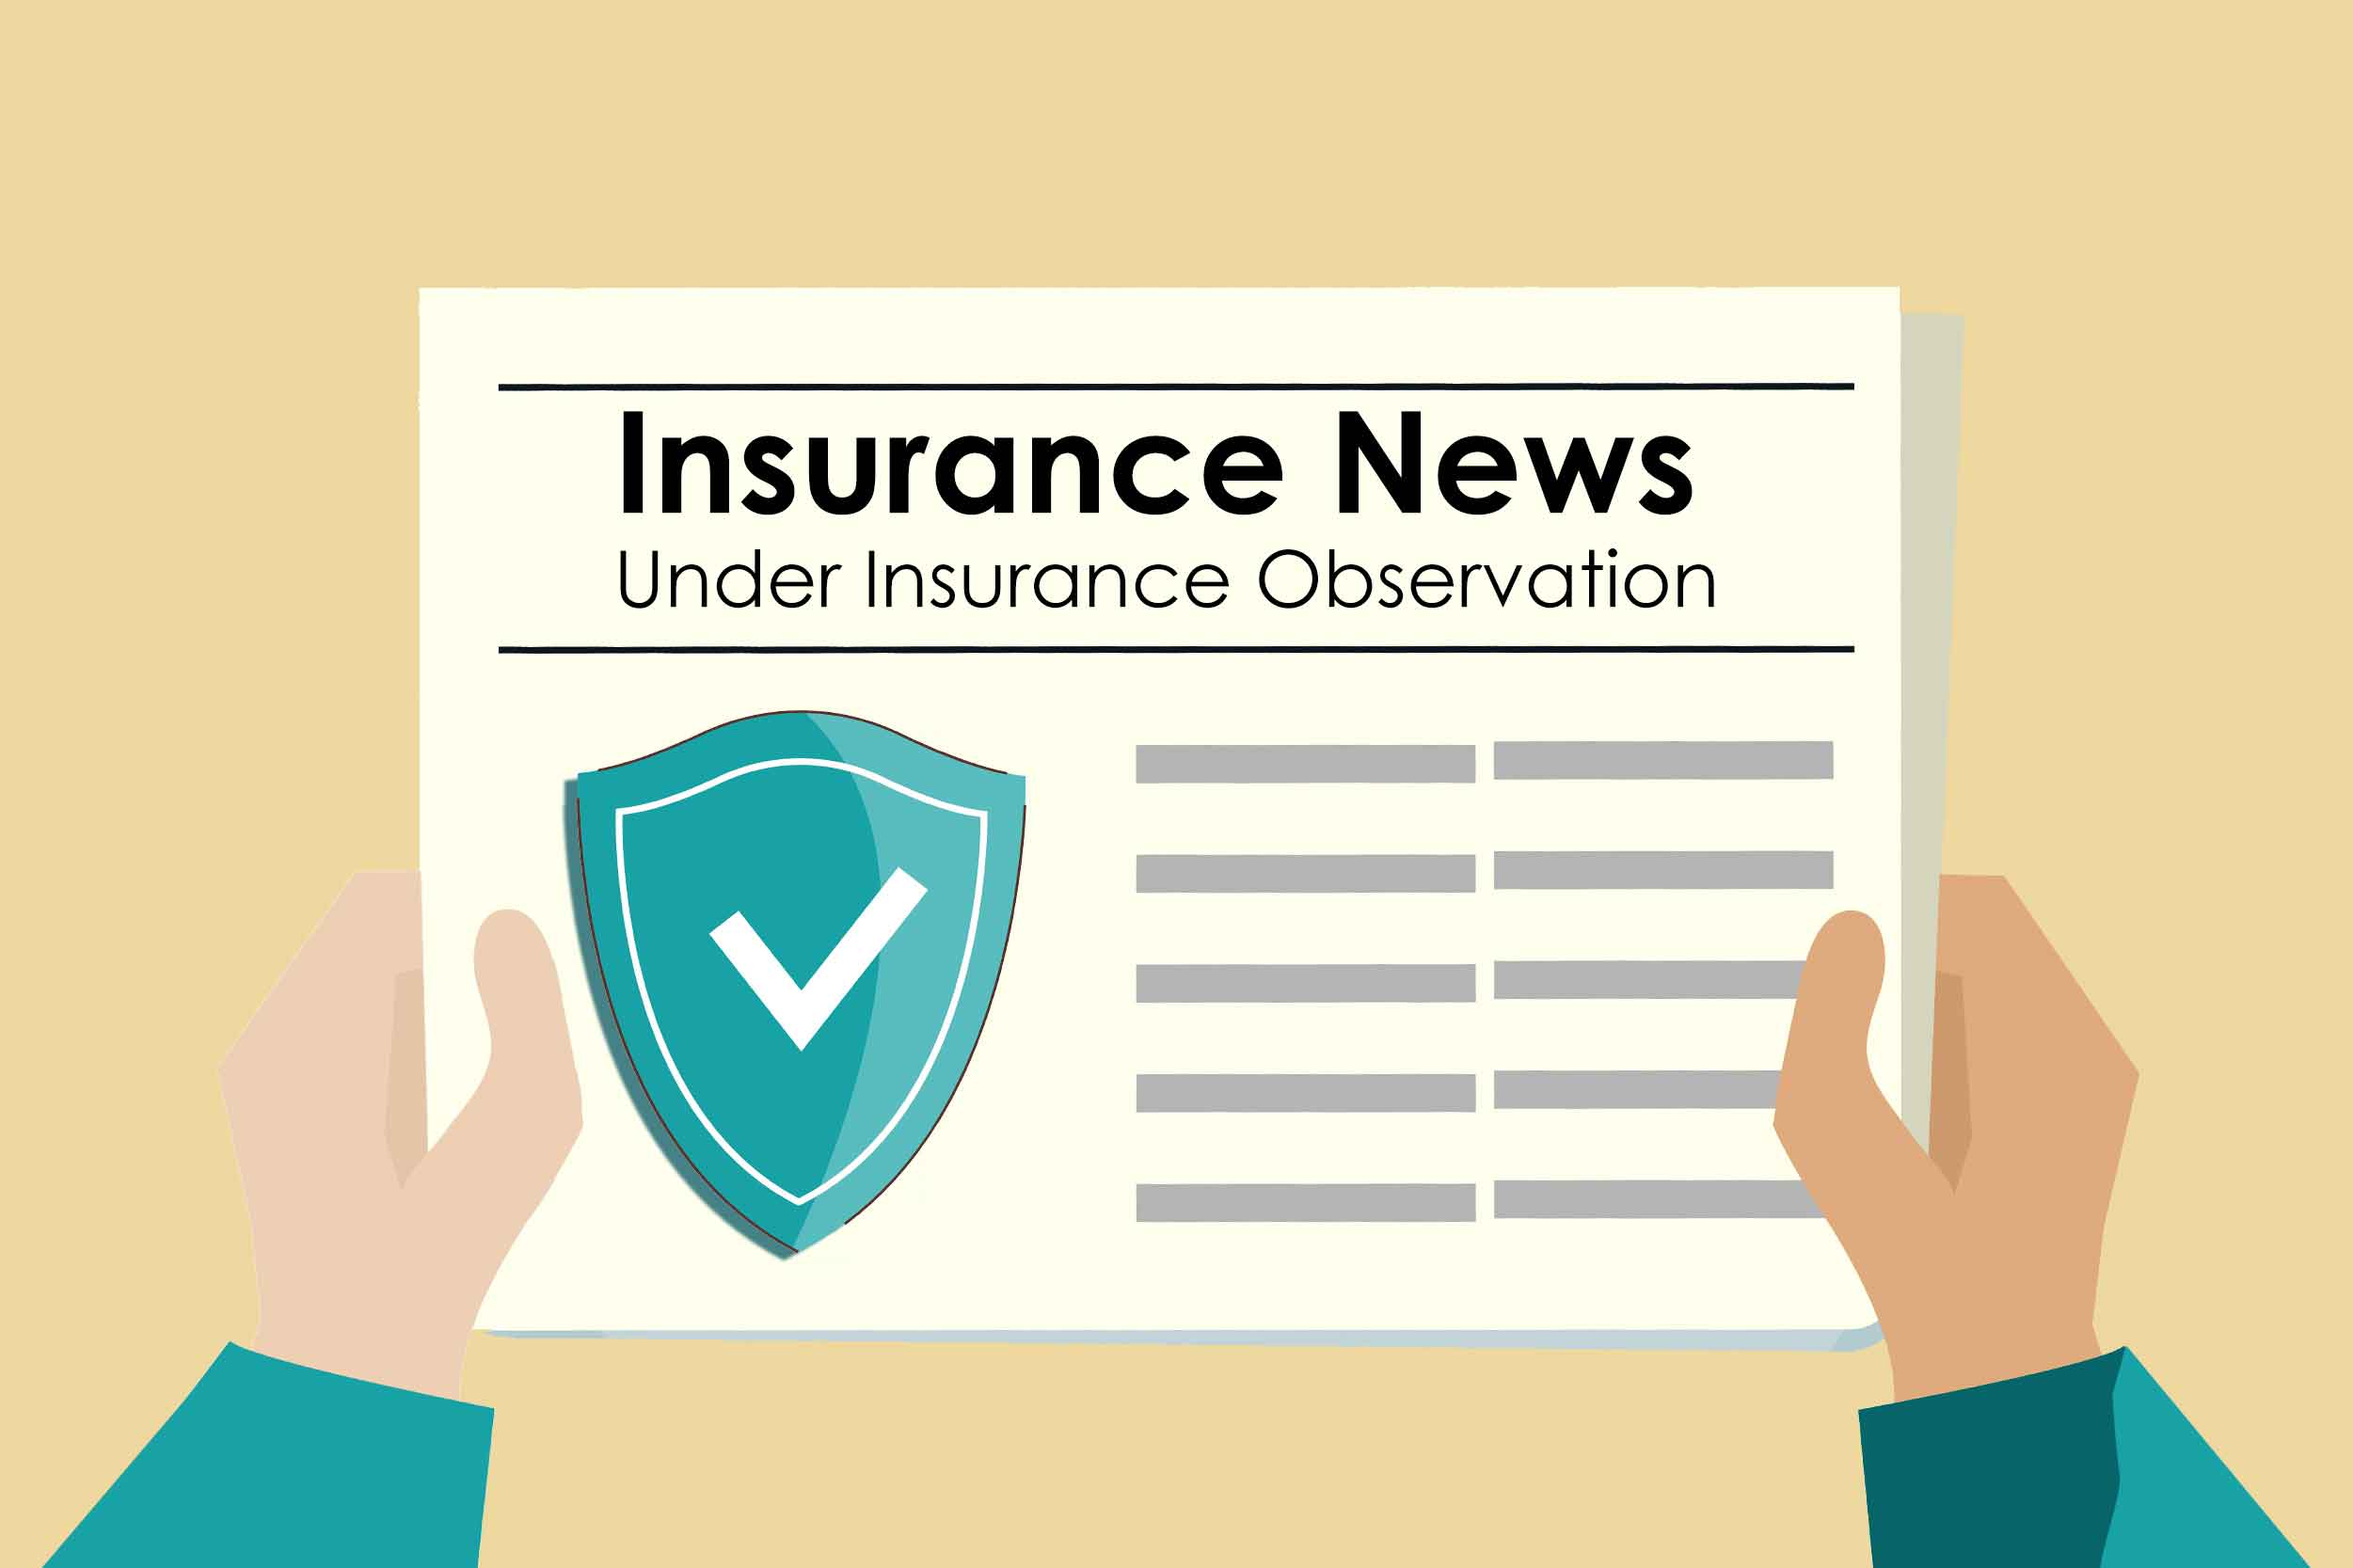 Under Insurance Observation